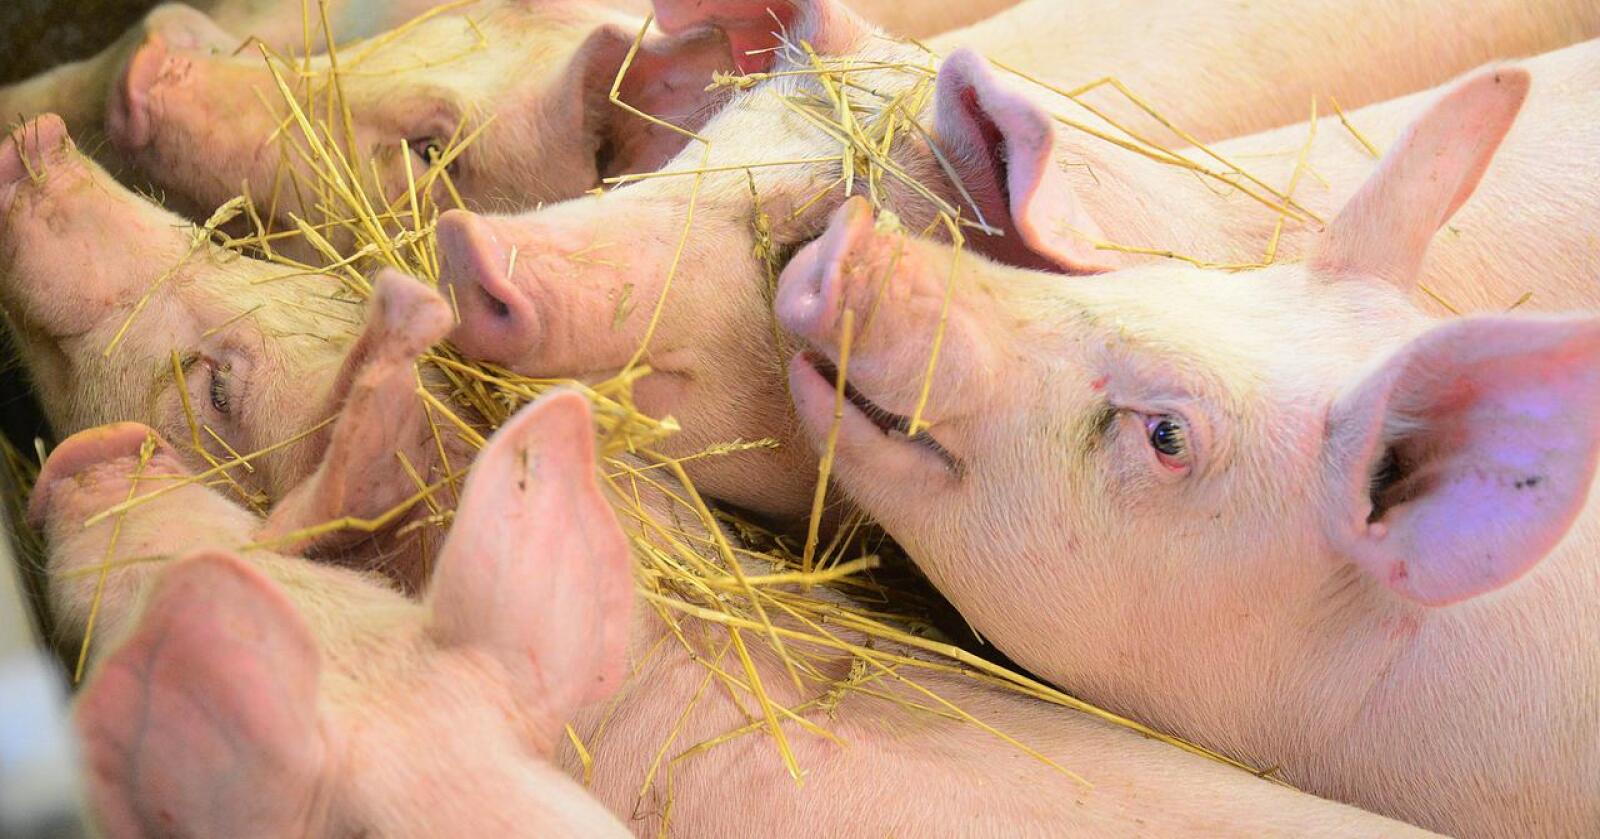 Dyrevelferd: Det føres ikke kontroll med alle matproduserende dyrehold i Norge. Mattilsynet har ikke ressurser til å dra på rutinetilsyn, skriver kronikkforfatterne. Illustrasjonsfoto: Siri Juell Rasmussen